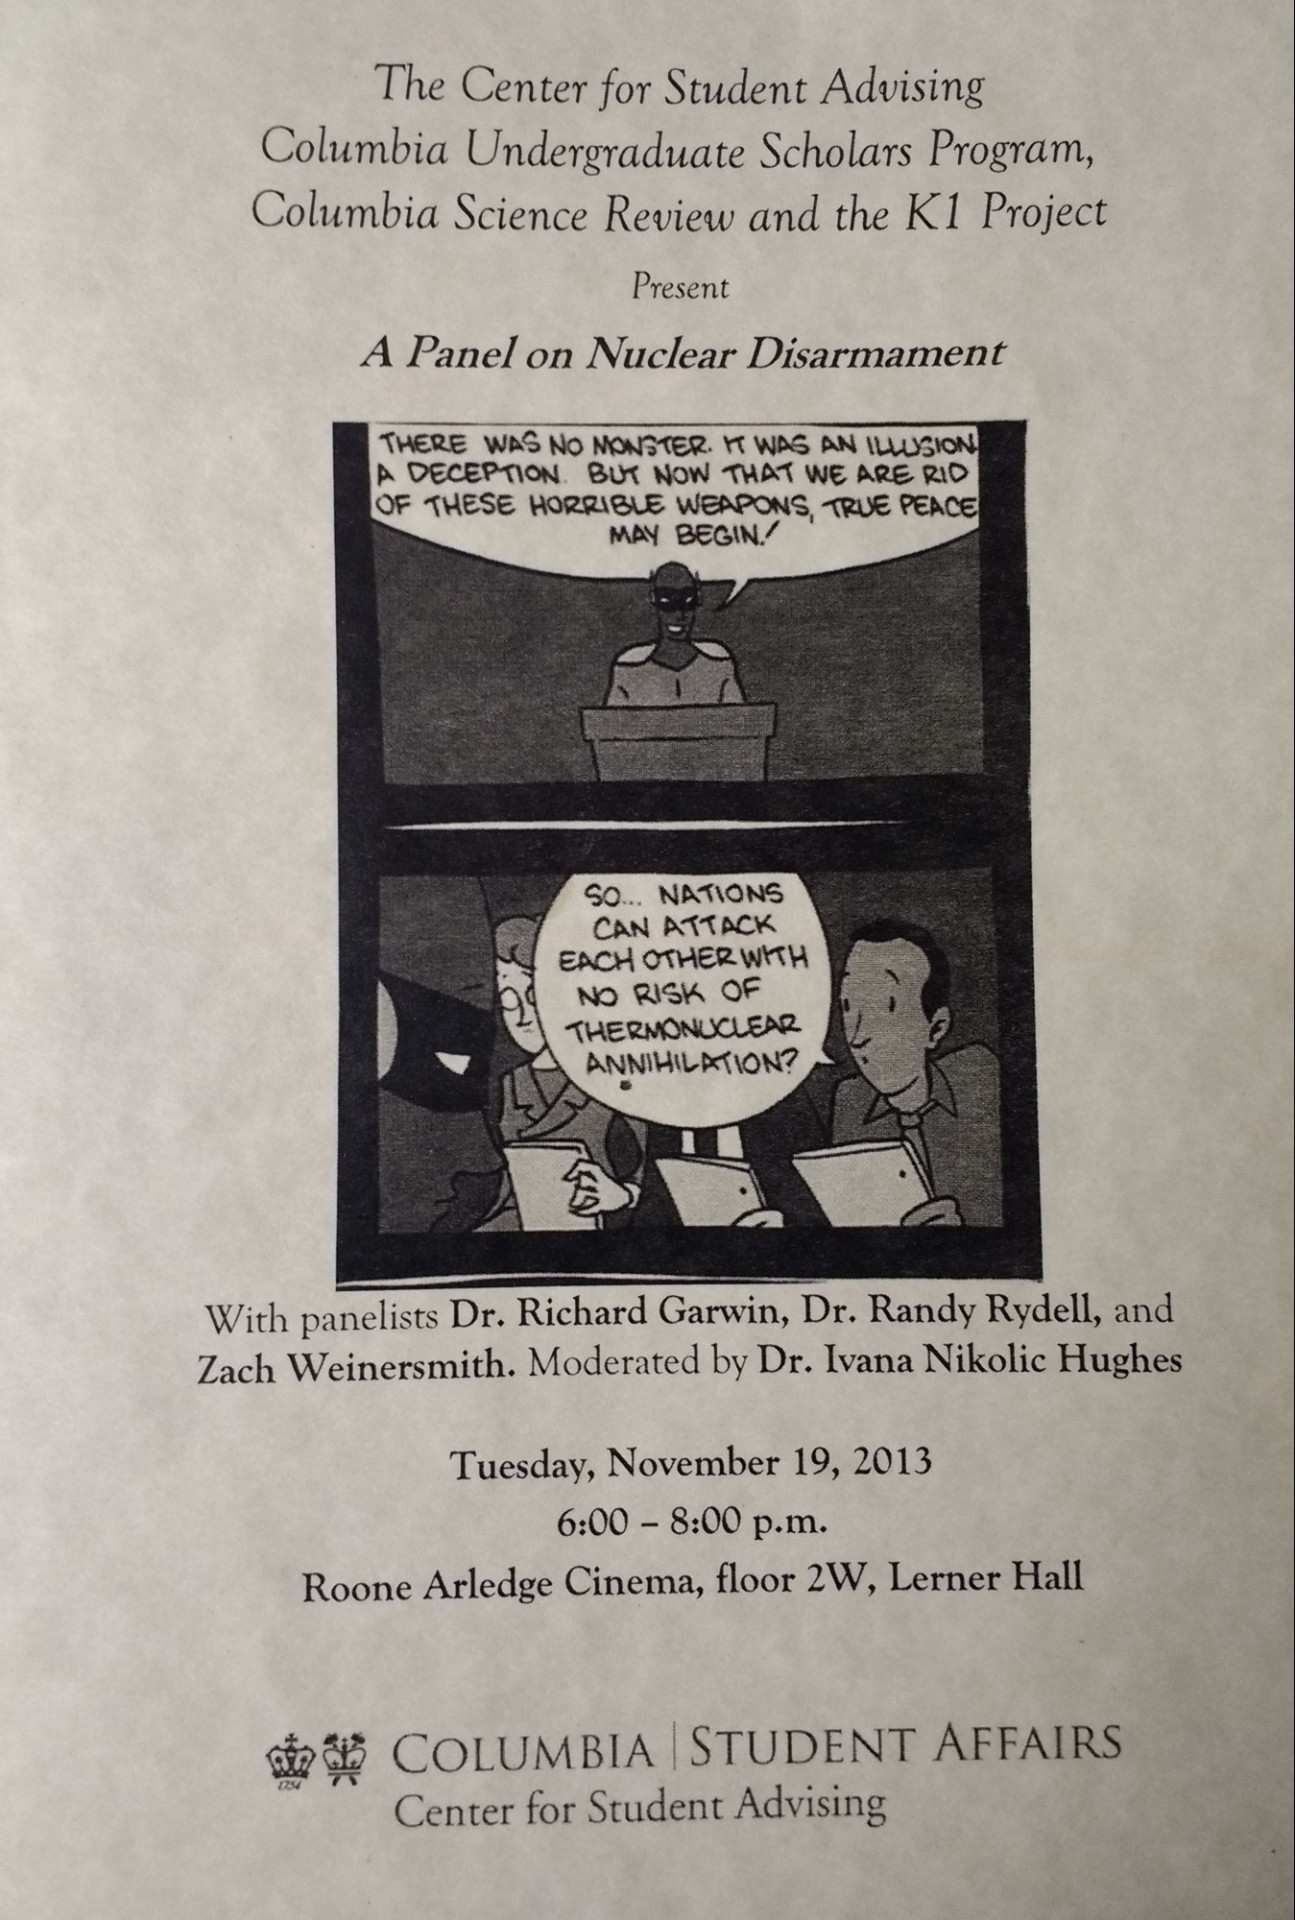 A panel on nuclear disarmament